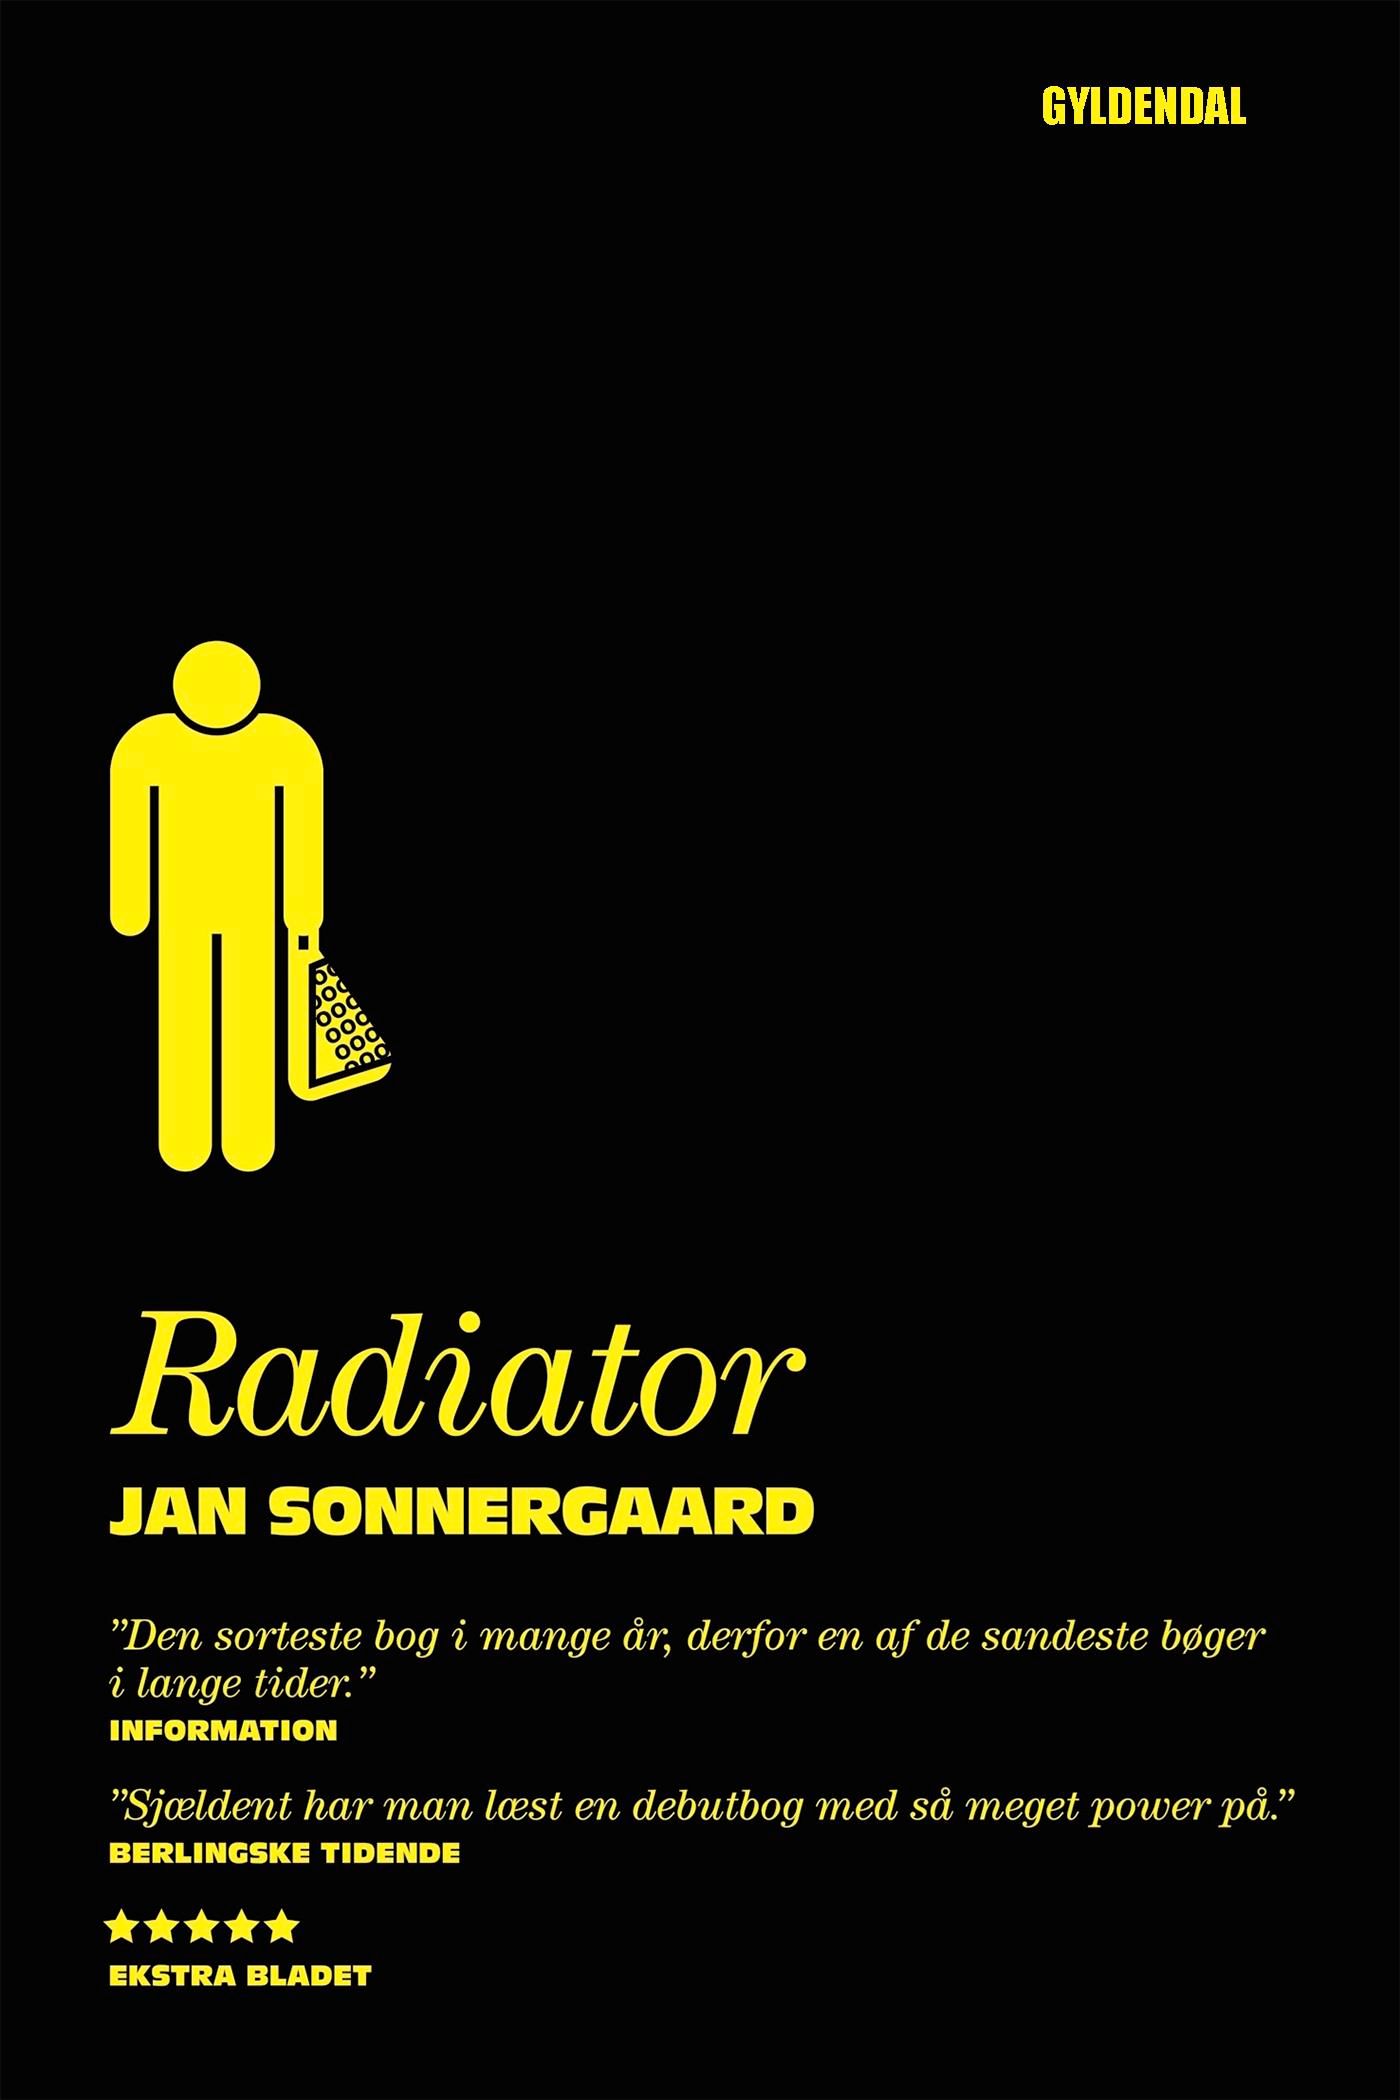 Radiator, eBook by Jan Sonnergaard